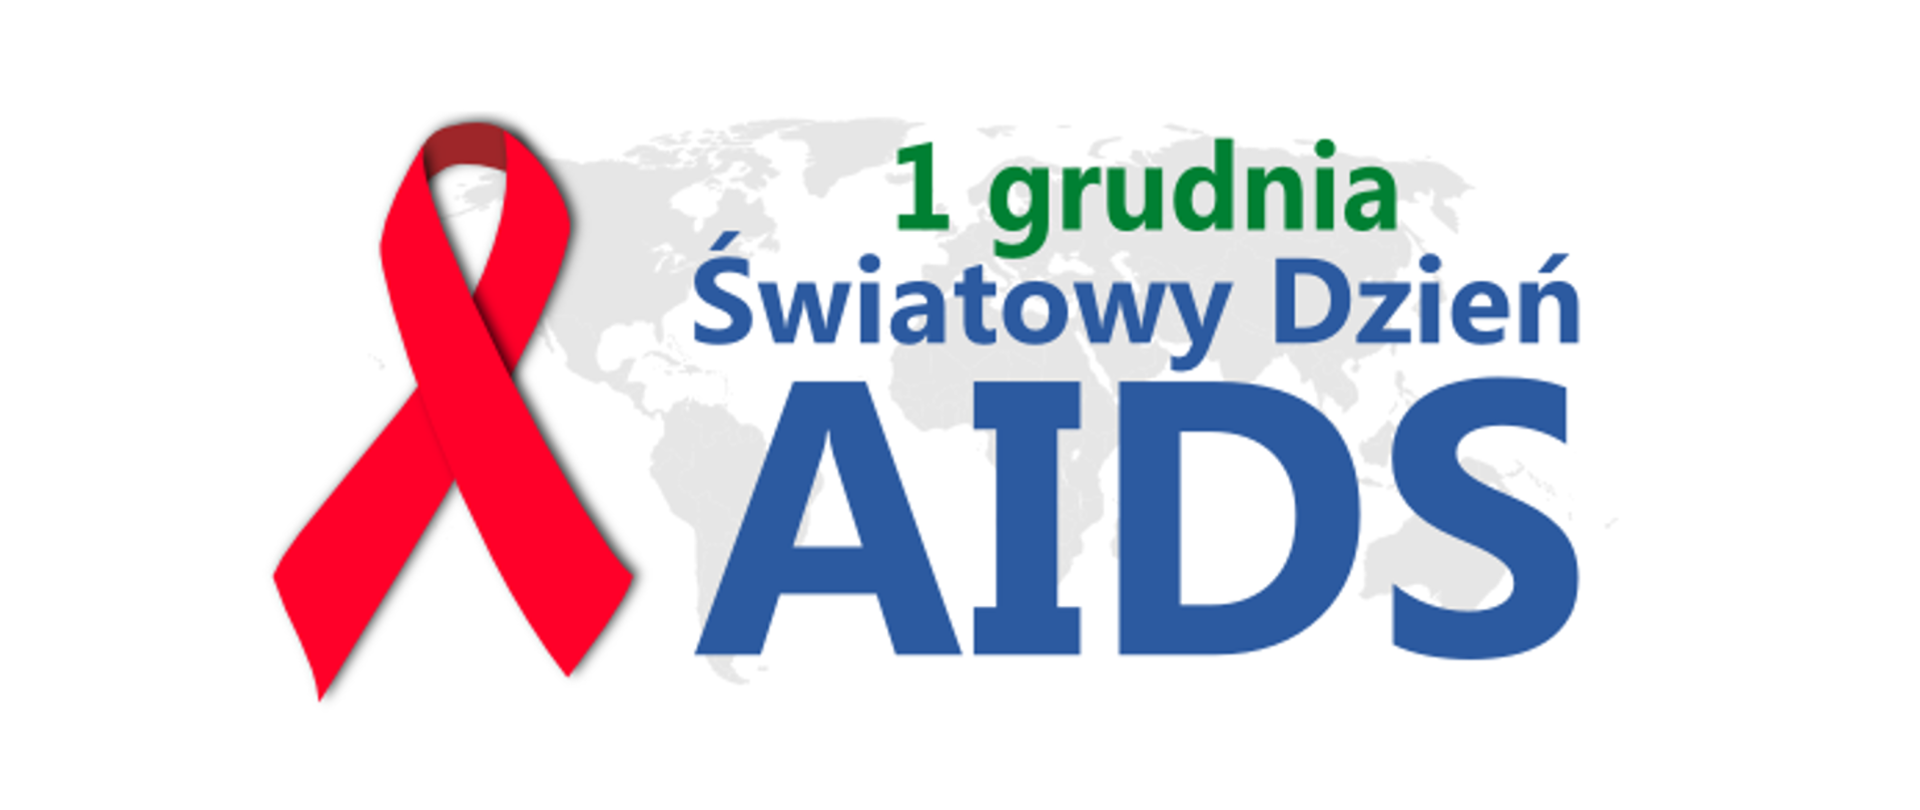 Baner przedstawia wstążeczkę oraz napis 1 grudnia światowy dzień AIDS